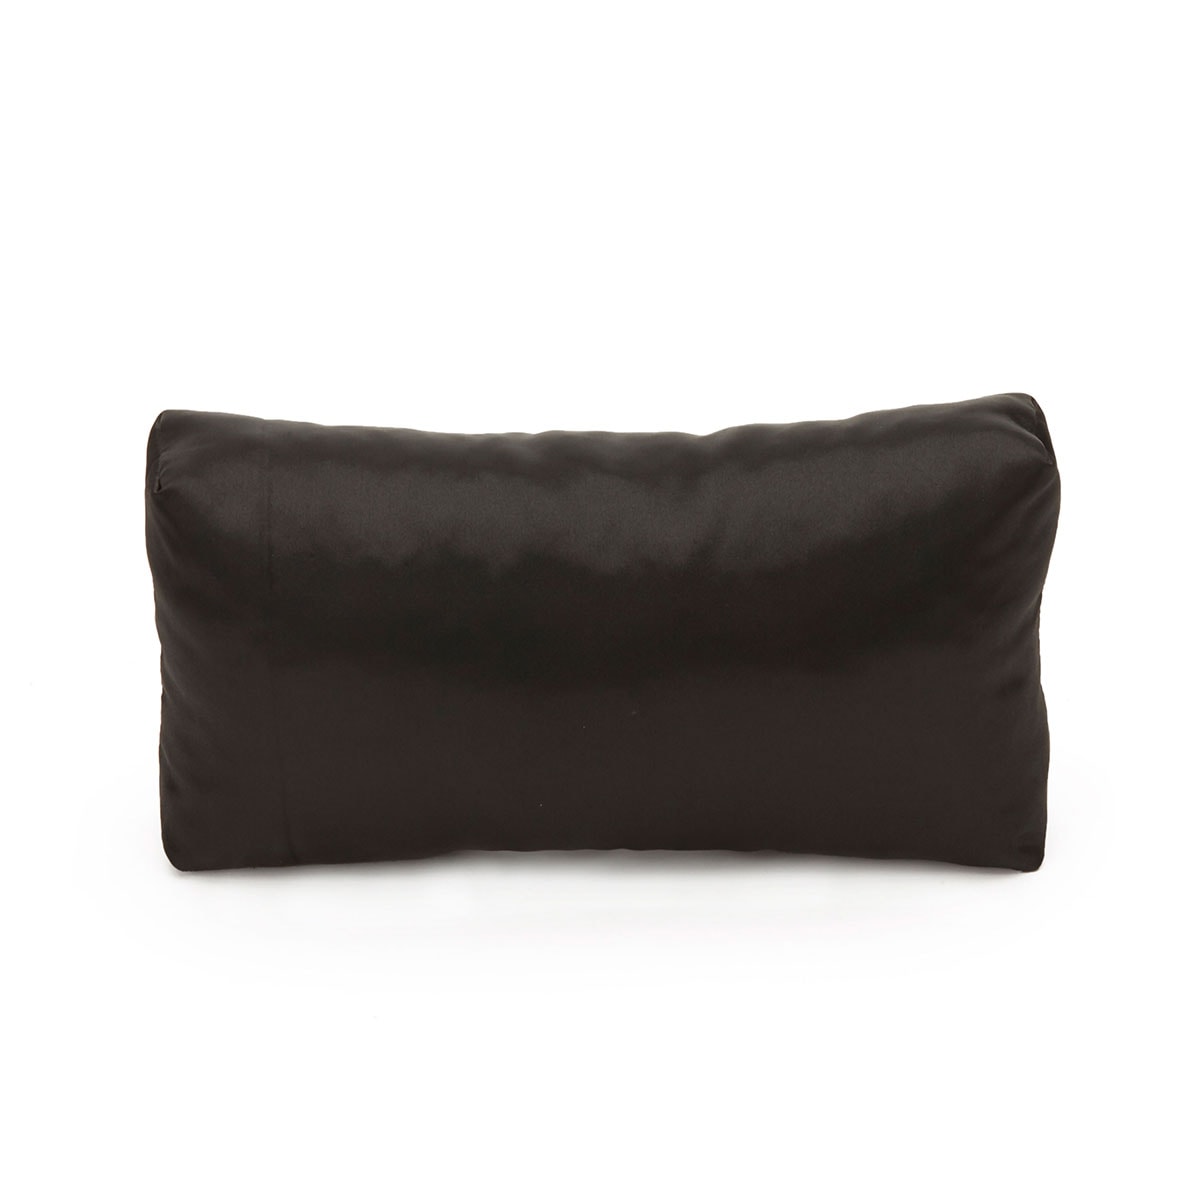 Purse Pillow for Hermes Birkin Bag Models, Bag Shaper Pillow, Purse St -  Zepmade